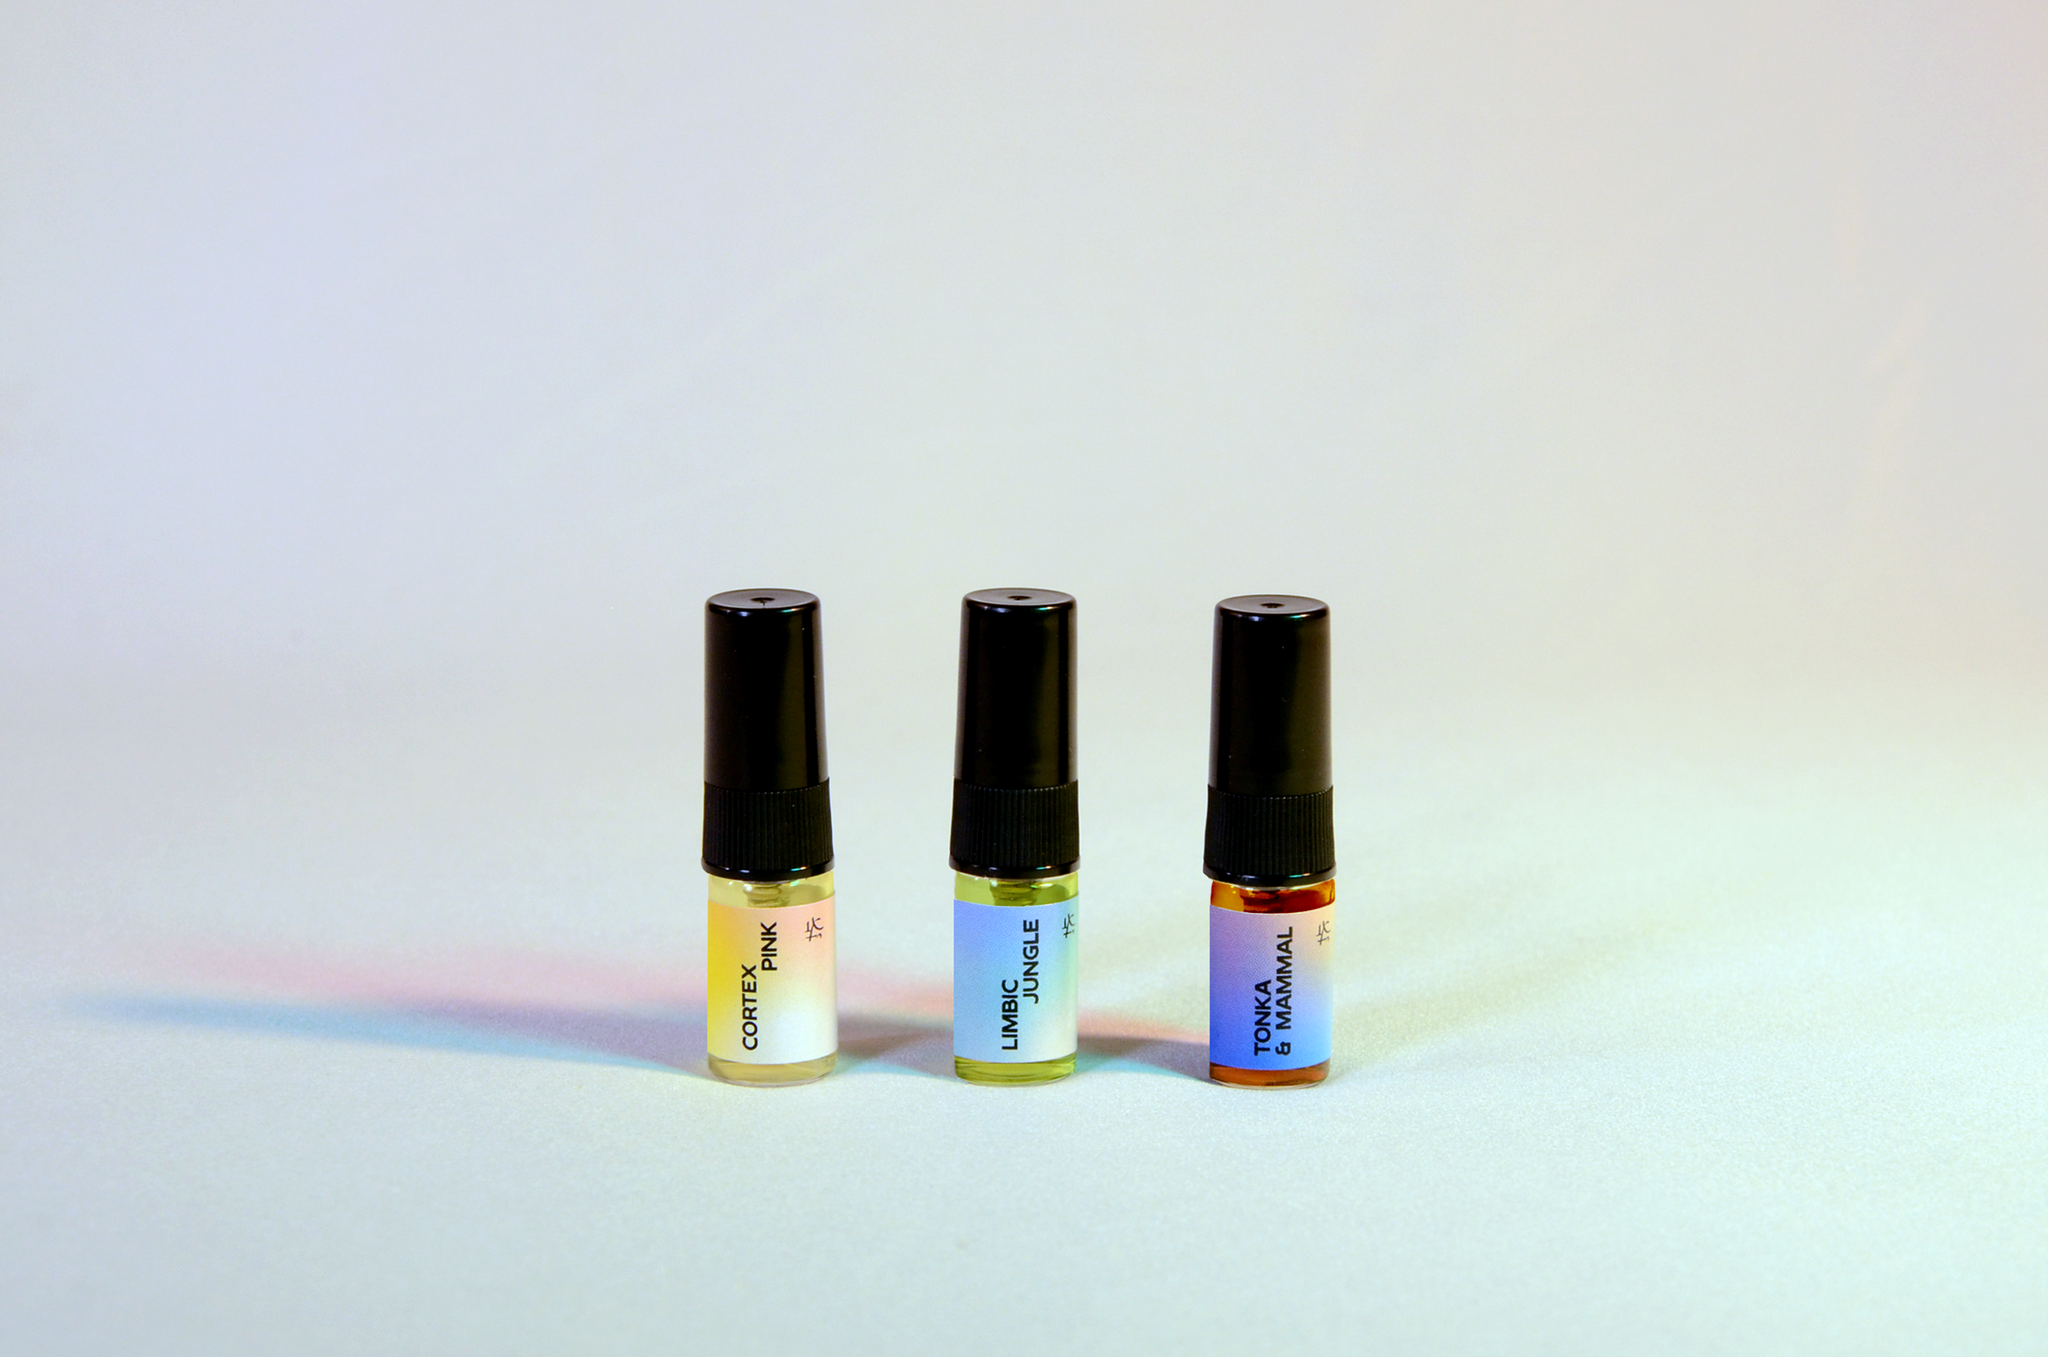 perfume sample set of three